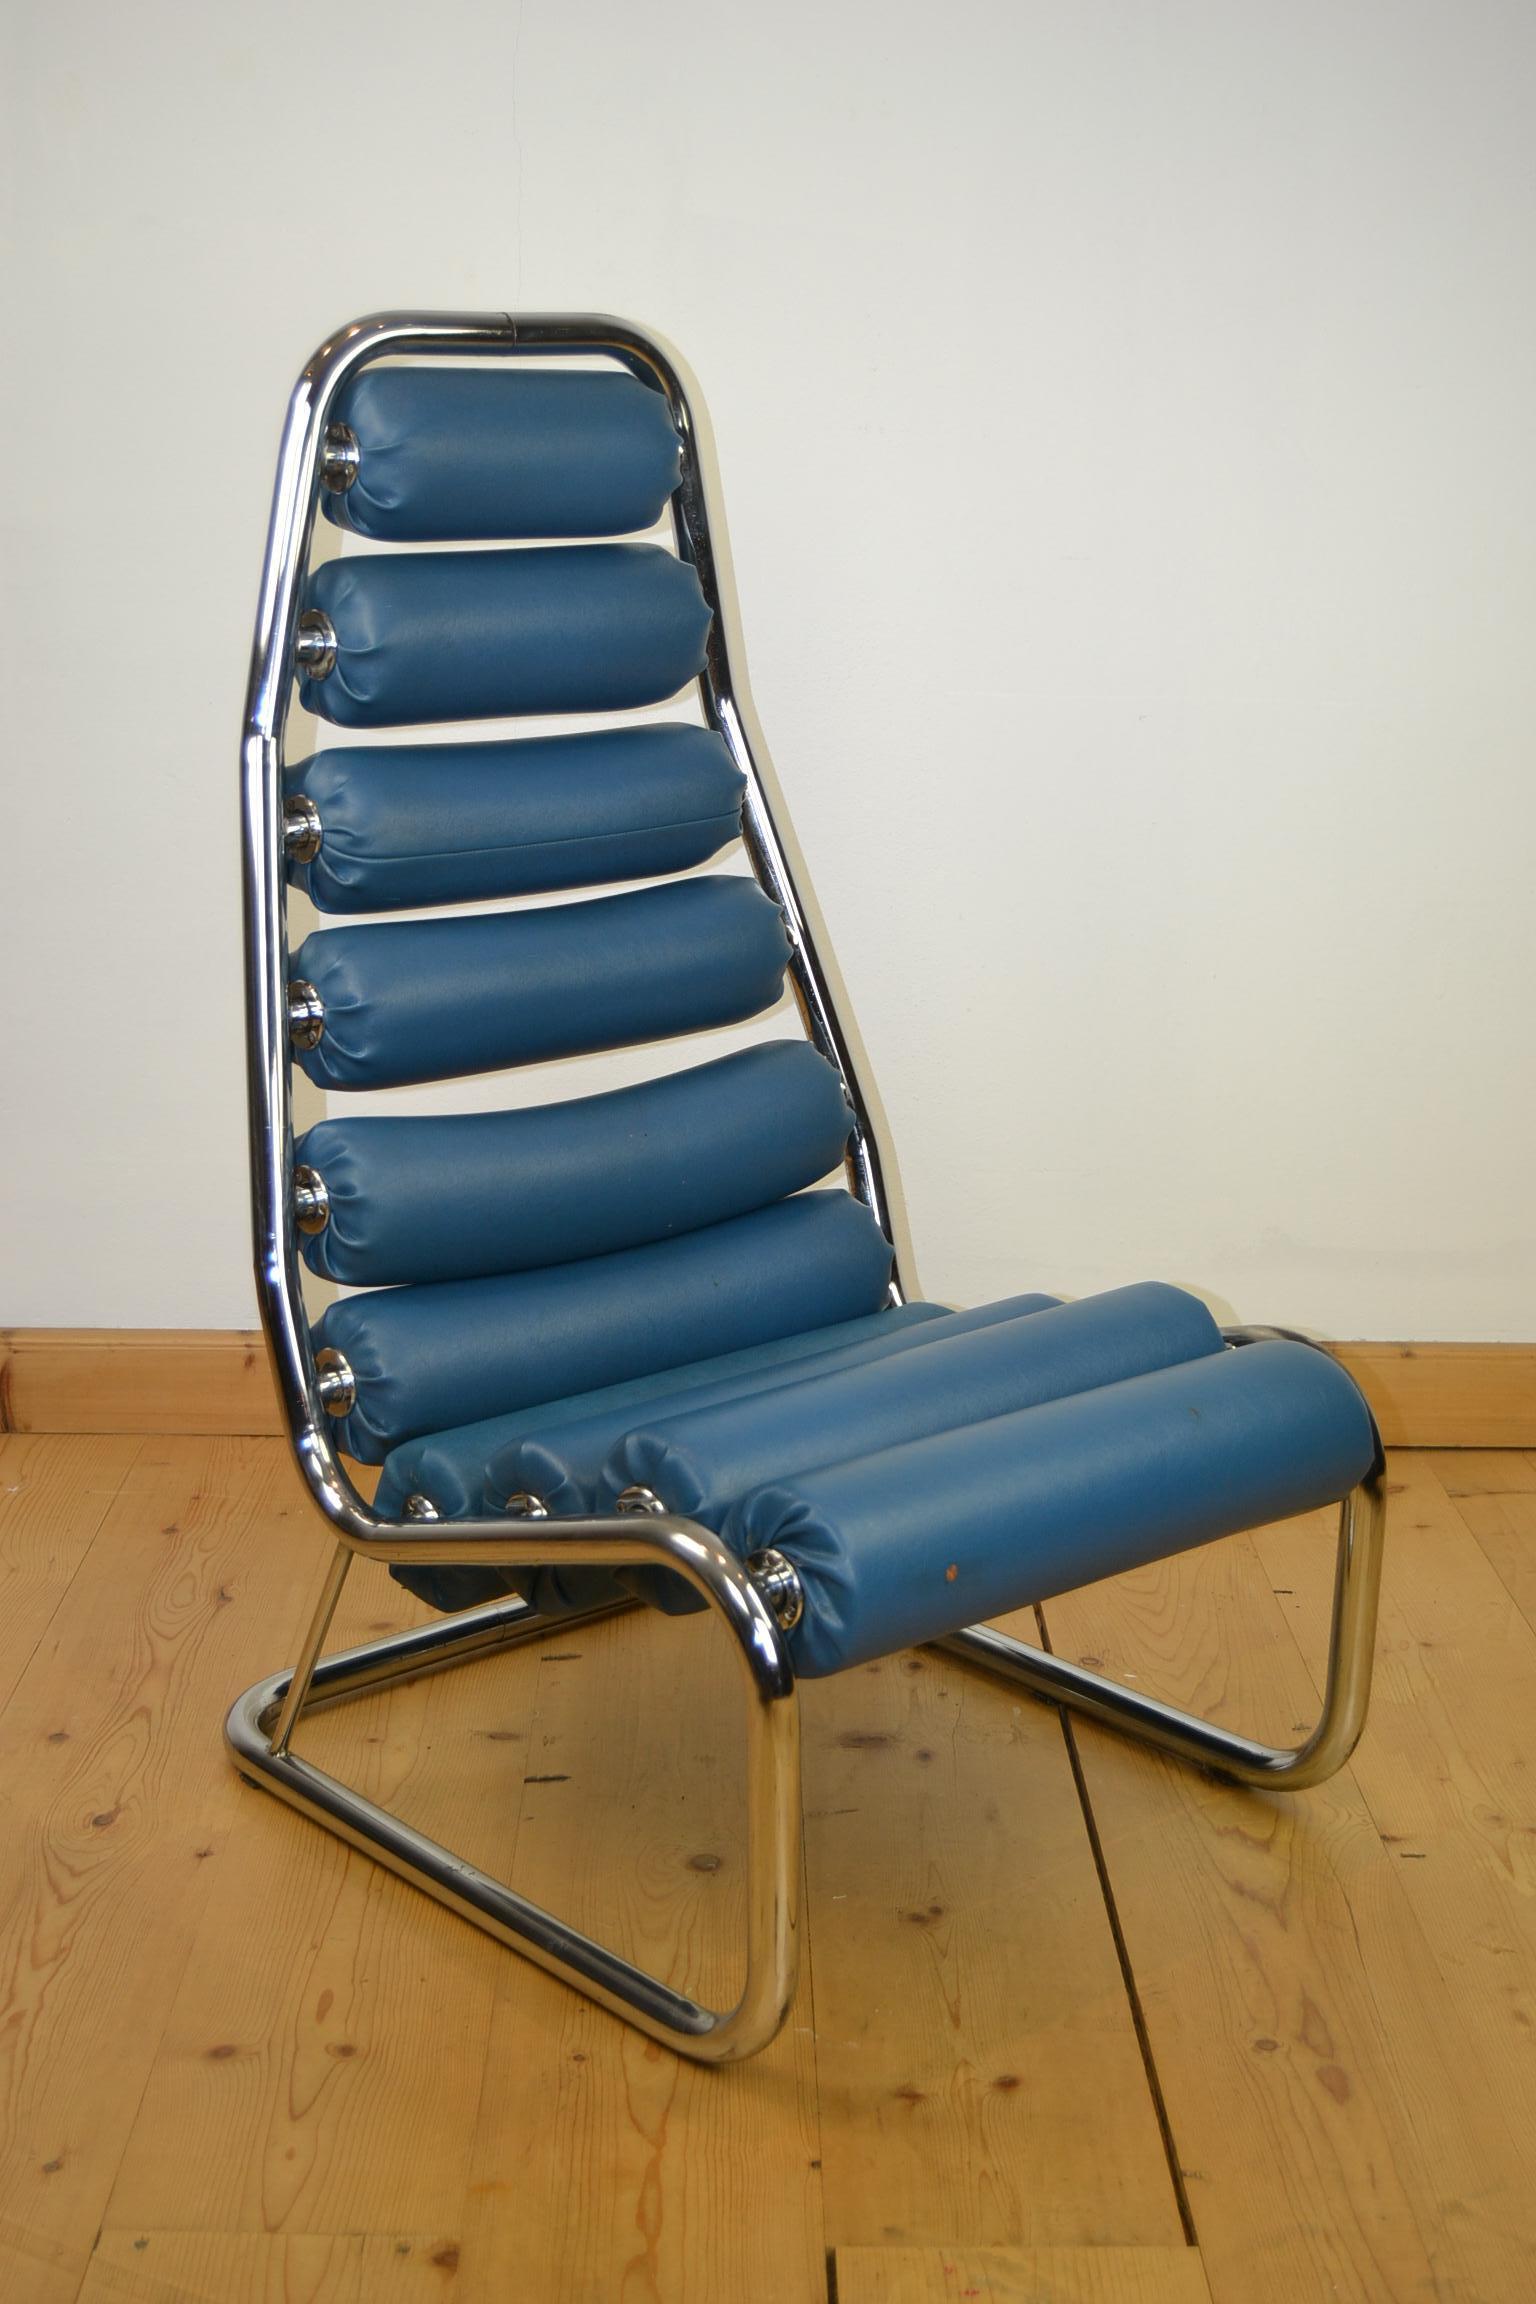 1970 Blue Club Chair. 
Une chaise accrocheuse composée d'une structure chromée avec 10 roulettes en similicuir bleu qui peuvent se retourner. Ces rouleaux vous font également penser à la salle de sport. 

Ce fauteuil à roulettes a été trouvé dans